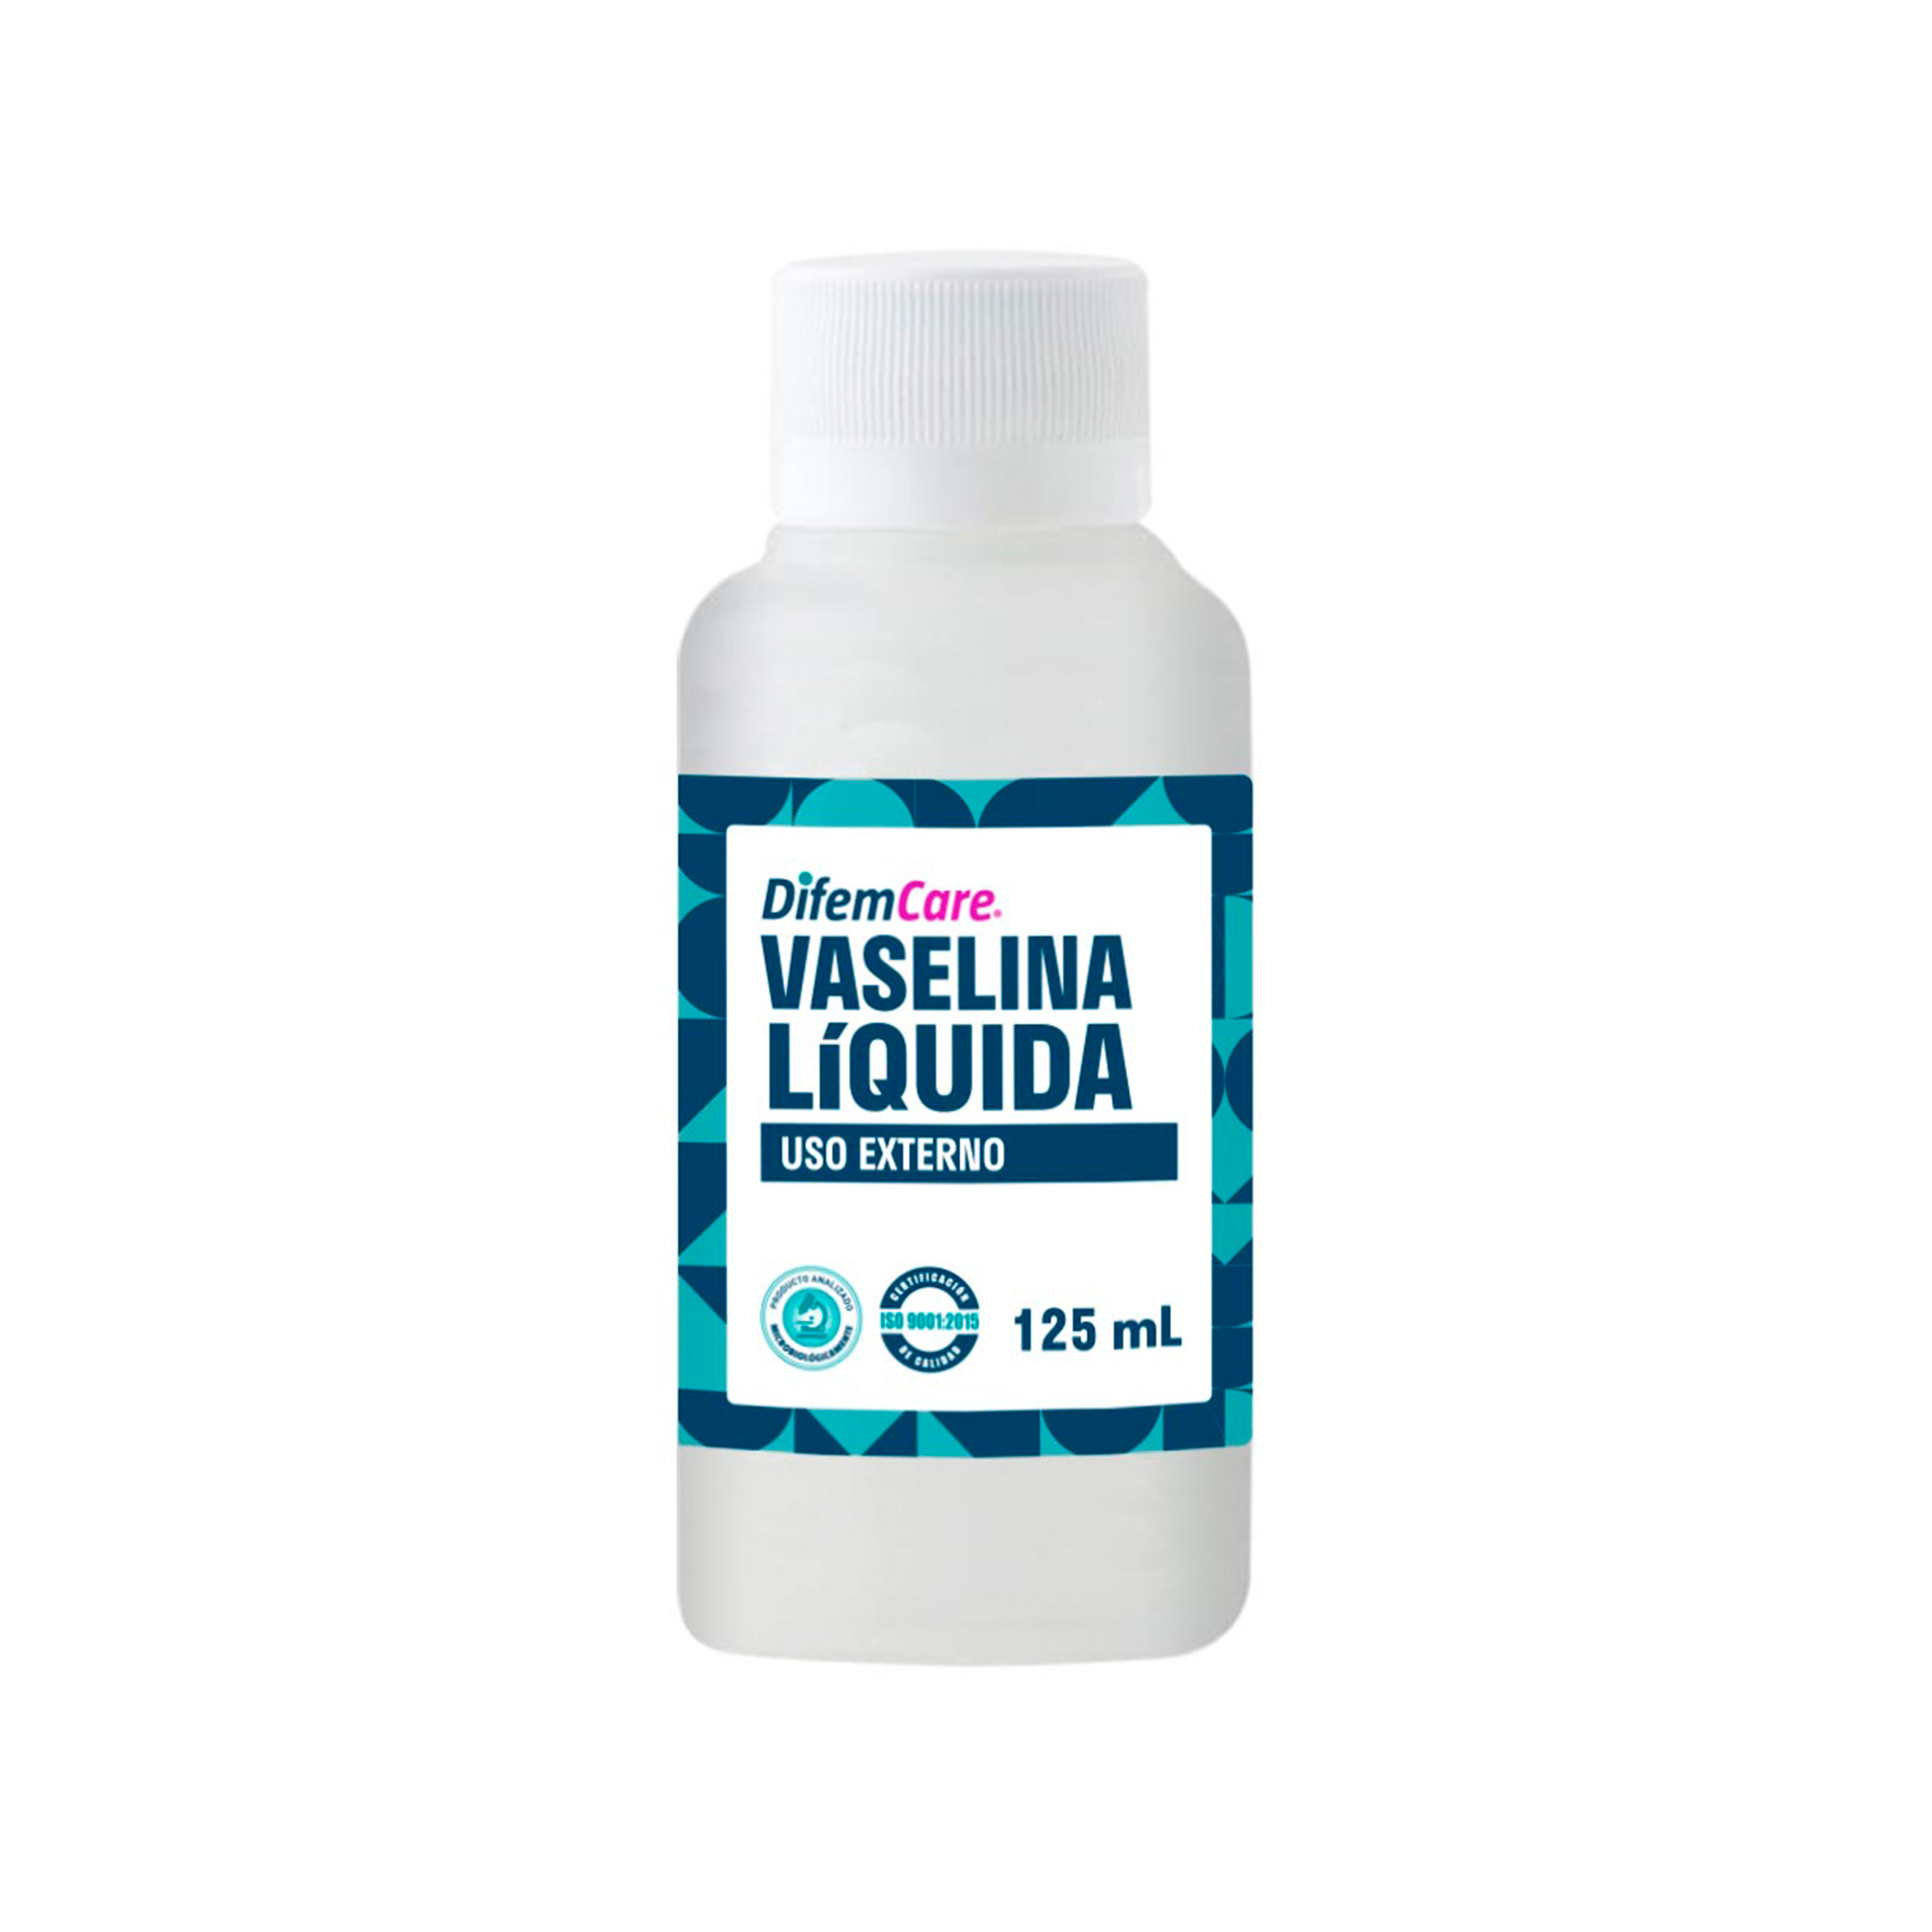 La vaselina es un aceite mineral, líquido, puro y transparente, no contiene olor, color ni sabor.